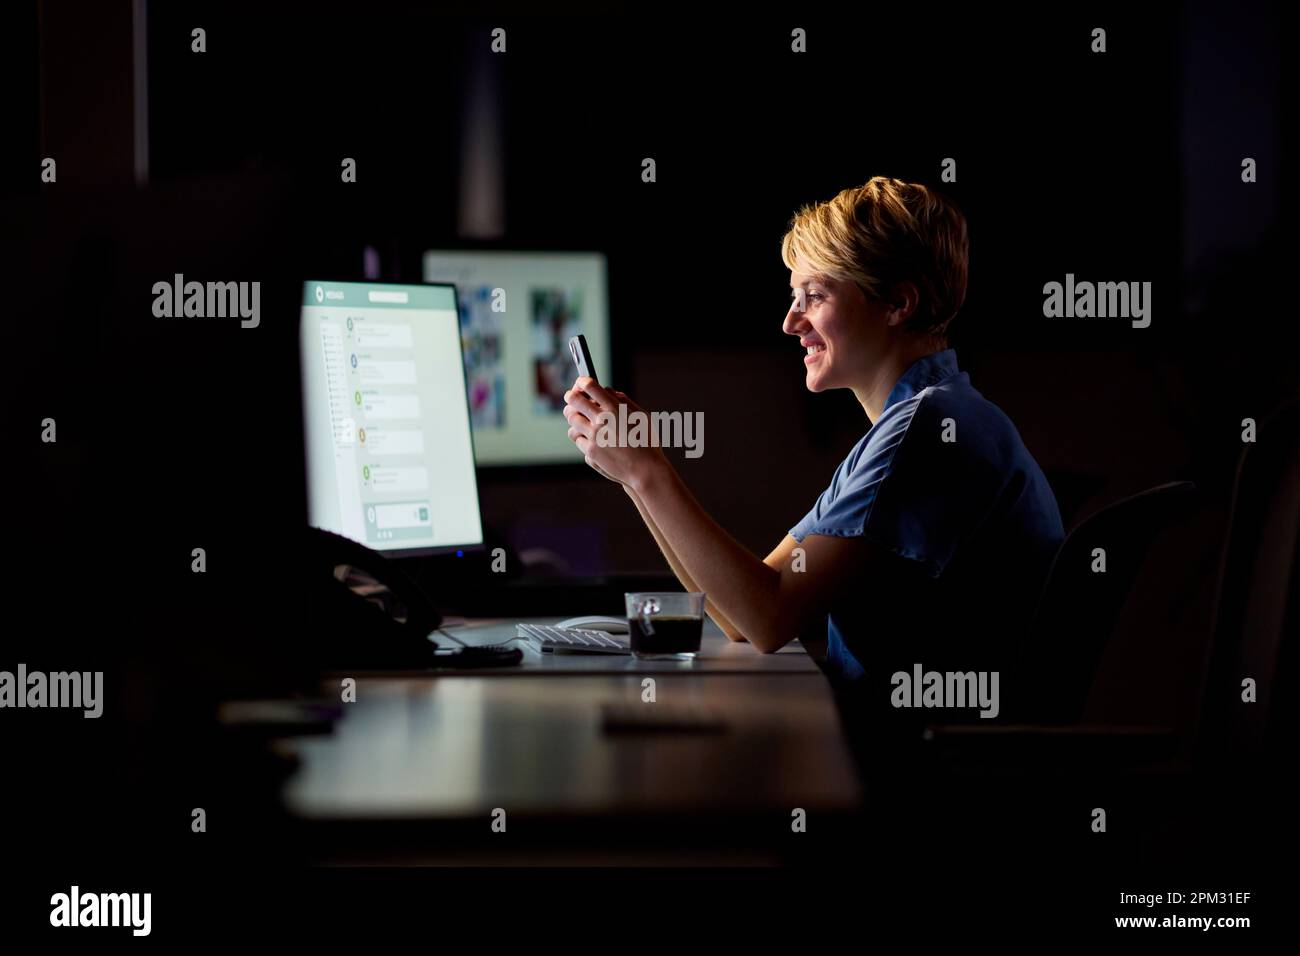 Empresaria que trabaja tarde en la oficina con la cara iluminada por la pantalla de la computadora usando el teléfono móvil Foto de stock